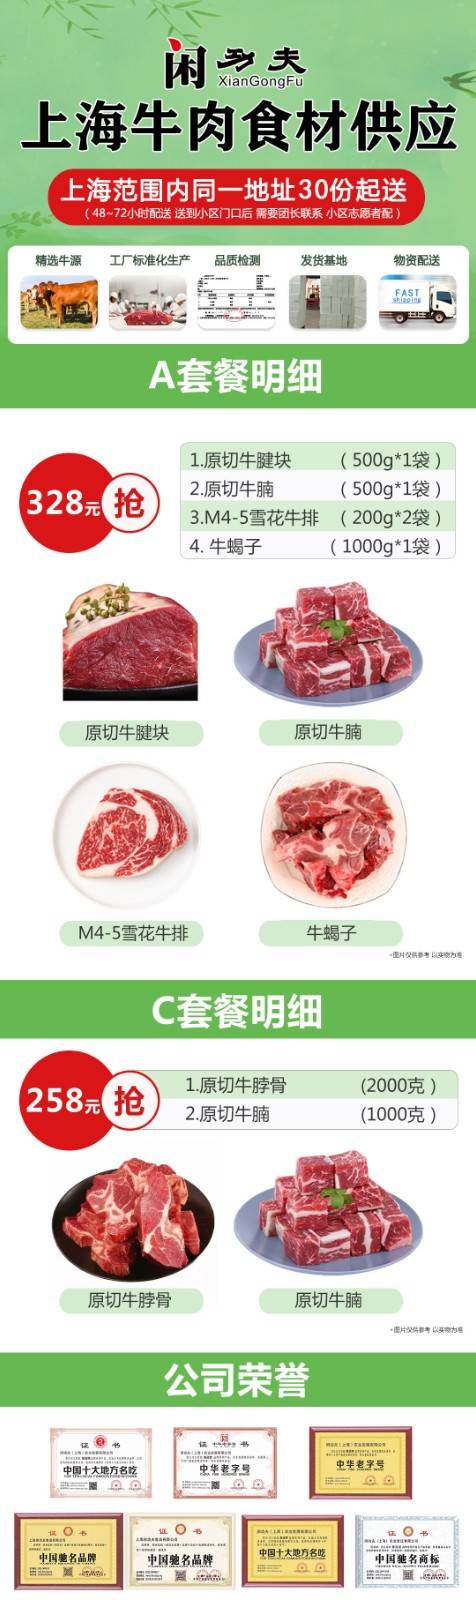 上海全区持证物流直达配送，单份328元， 一人可购买多份，同一地址30份起送，闲功夫牛肉A类套餐：原切牛腱（500g*1）+原切牛腩（500g*1）+M4-5雪花牛排（200g*2）+牛蝎子（1000g*1）